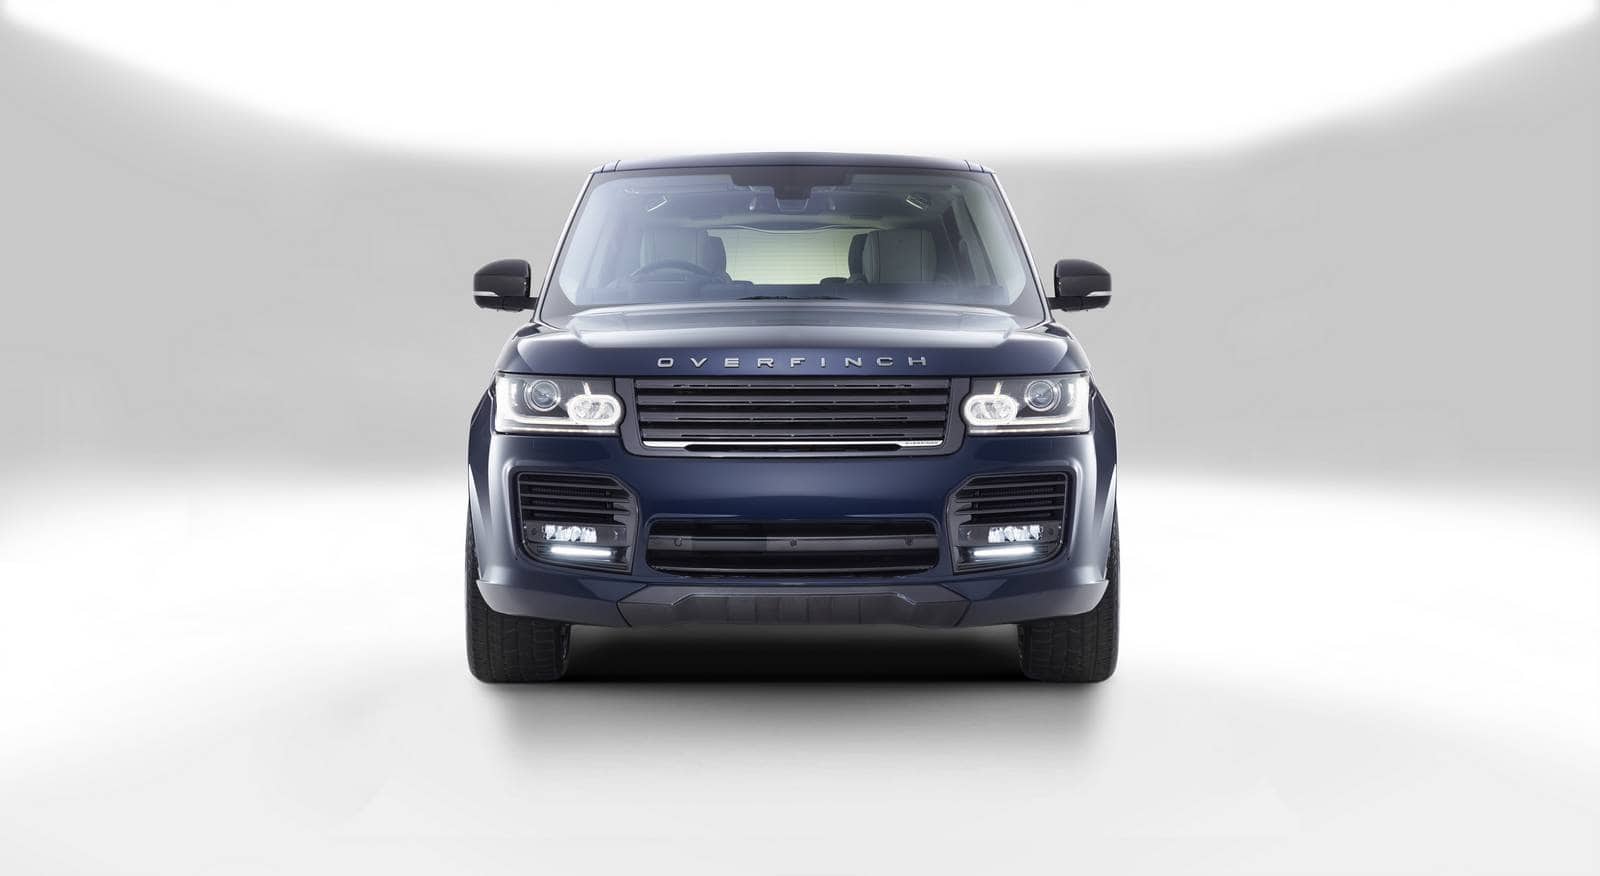 El SUV Range Rover “London Edition” de Overfinch es súper exclusiva y costosa